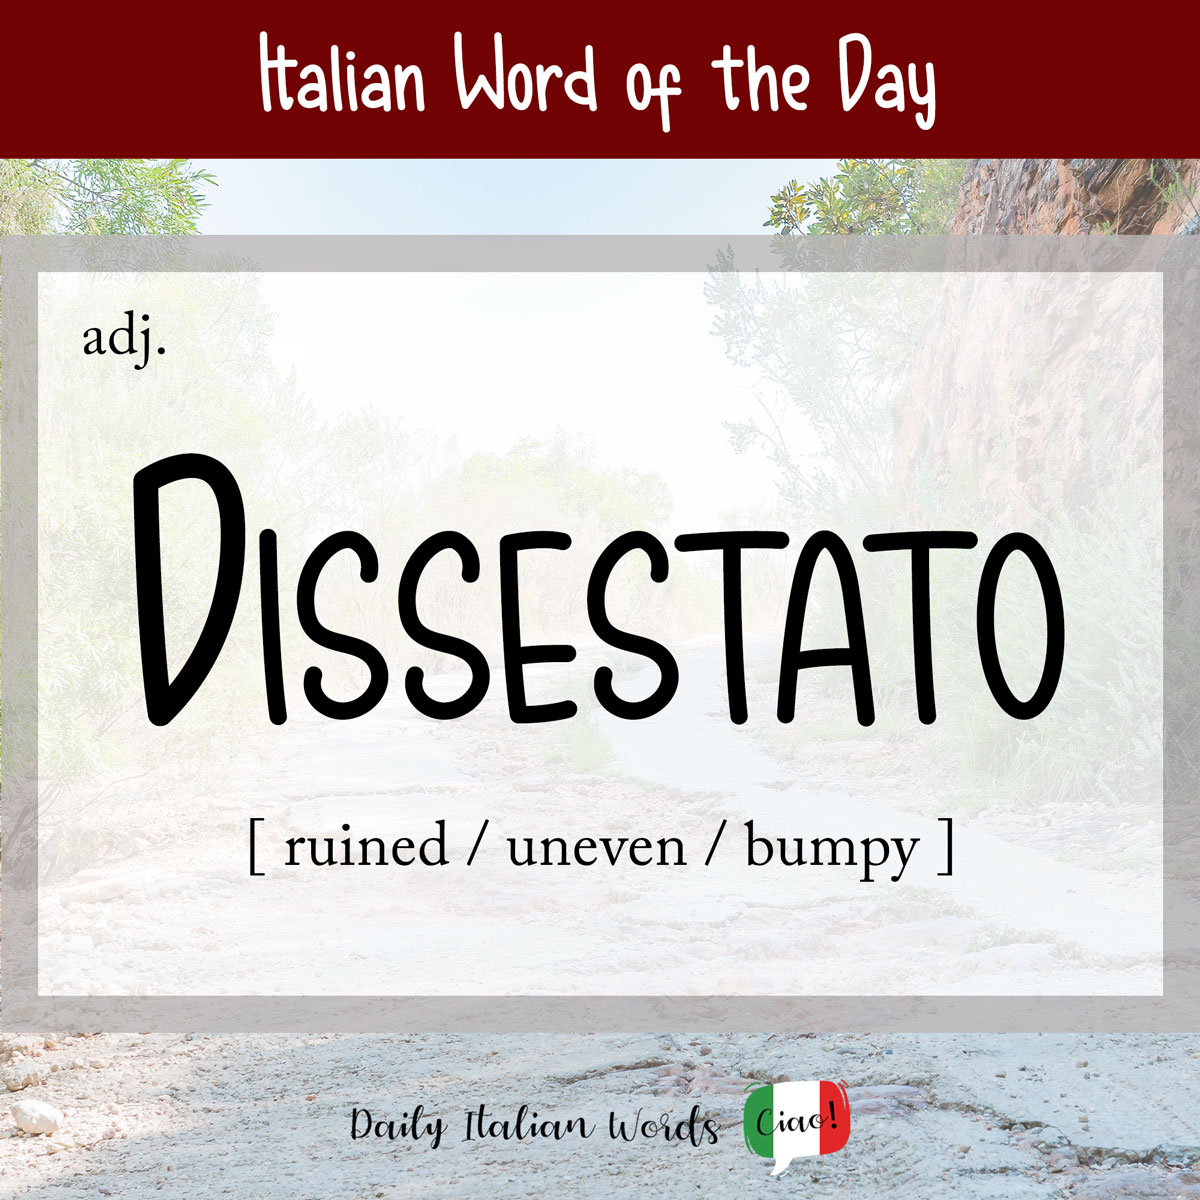 Italian word "dissestato"